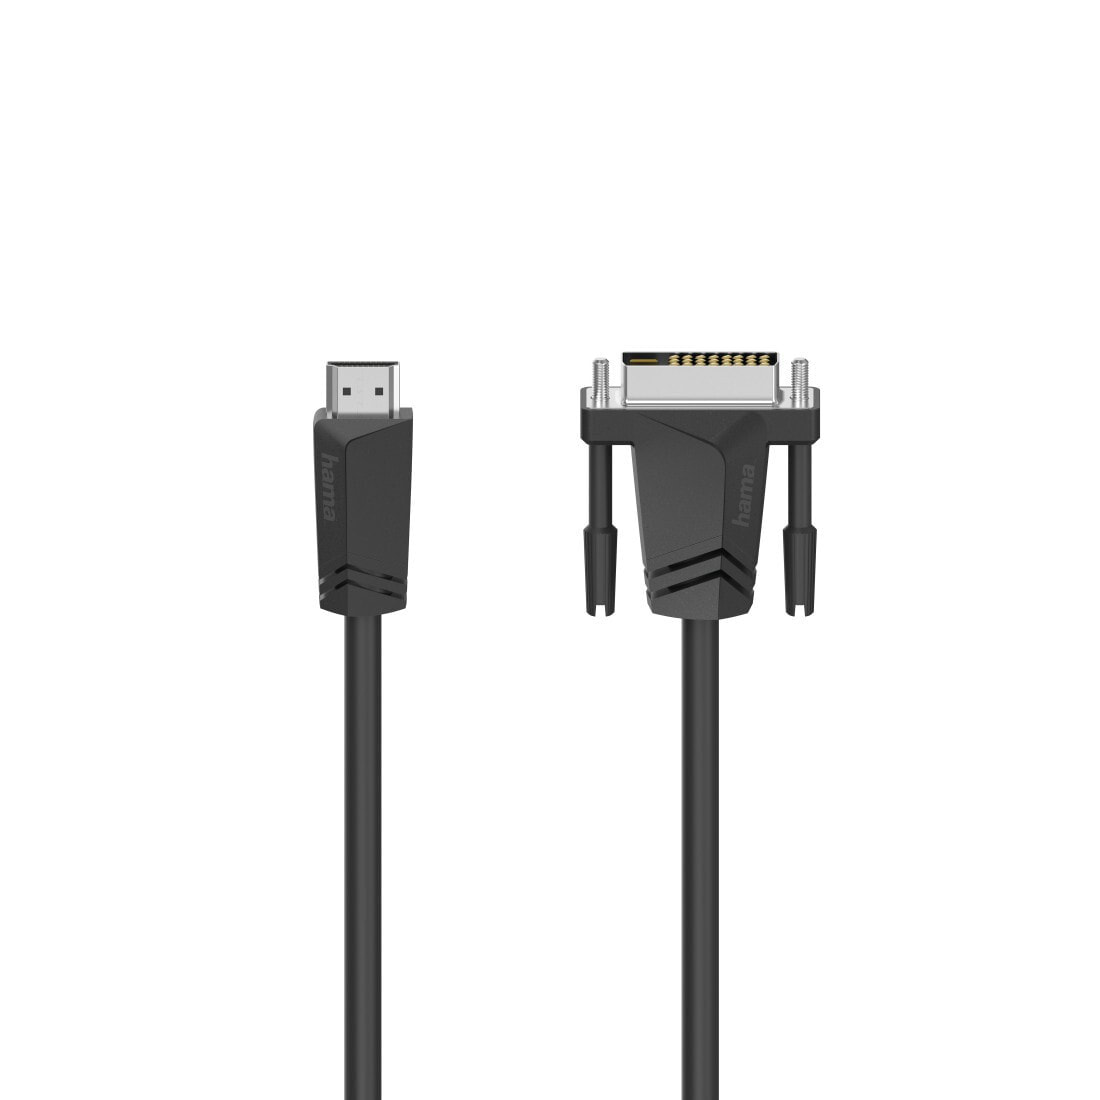 Компьютерный разъем или переходник Hama GmbH & Co KG Hama 00205018. Cable length: 1.5 m, Connector 1: HDMI Type A (Standard), Connector 2: DVI-D